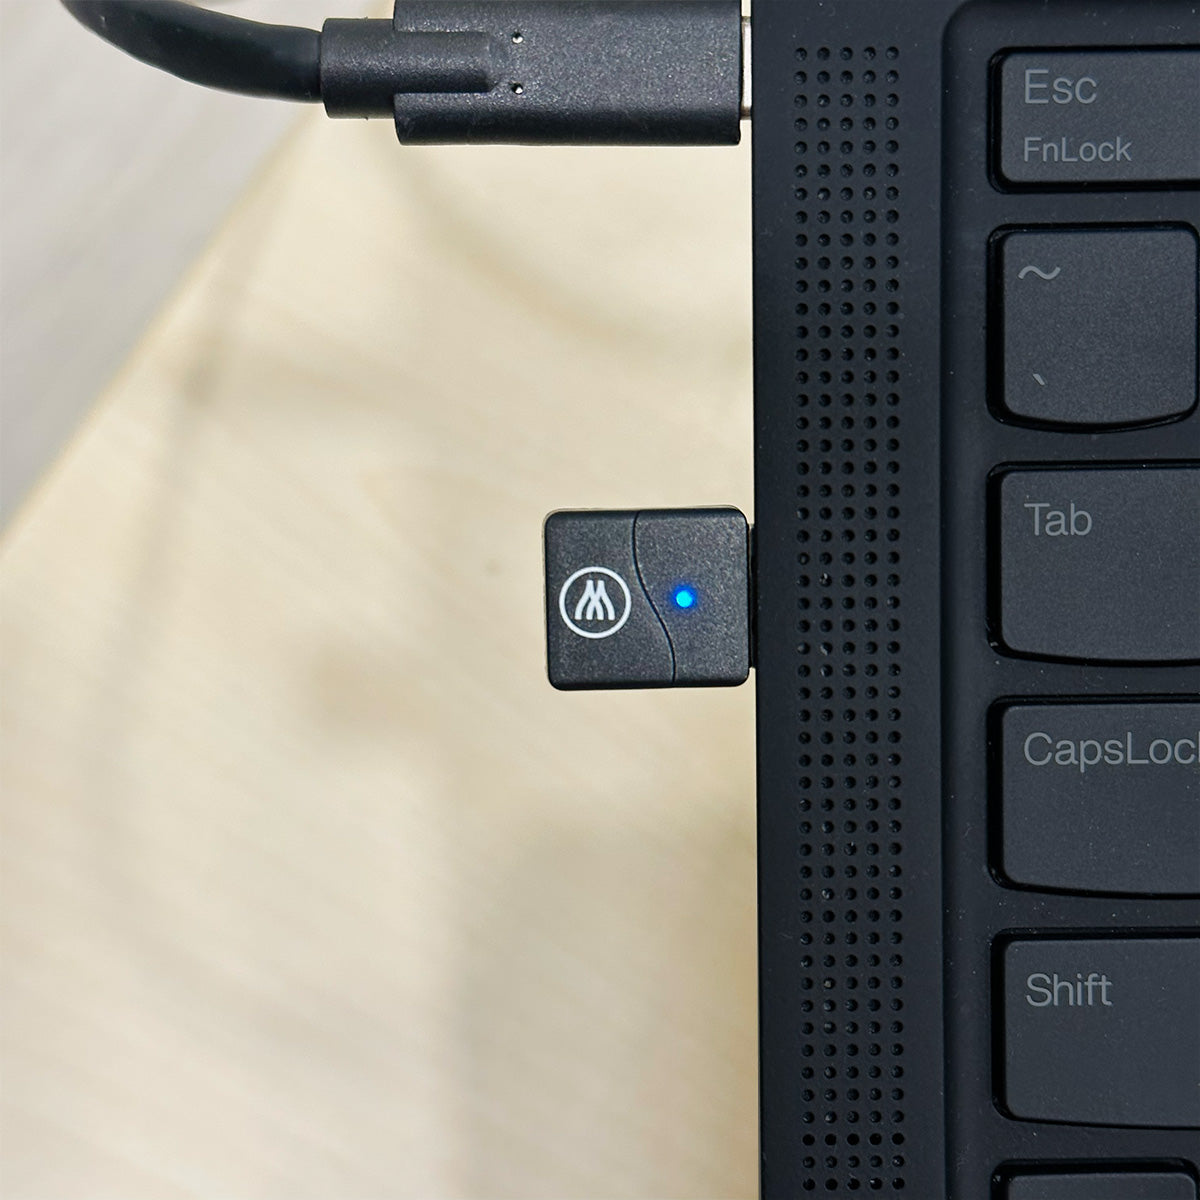 Tilde USB Dongle for Tilde Pro C+ and Tilde Pro S+ Headsets 3770012094126